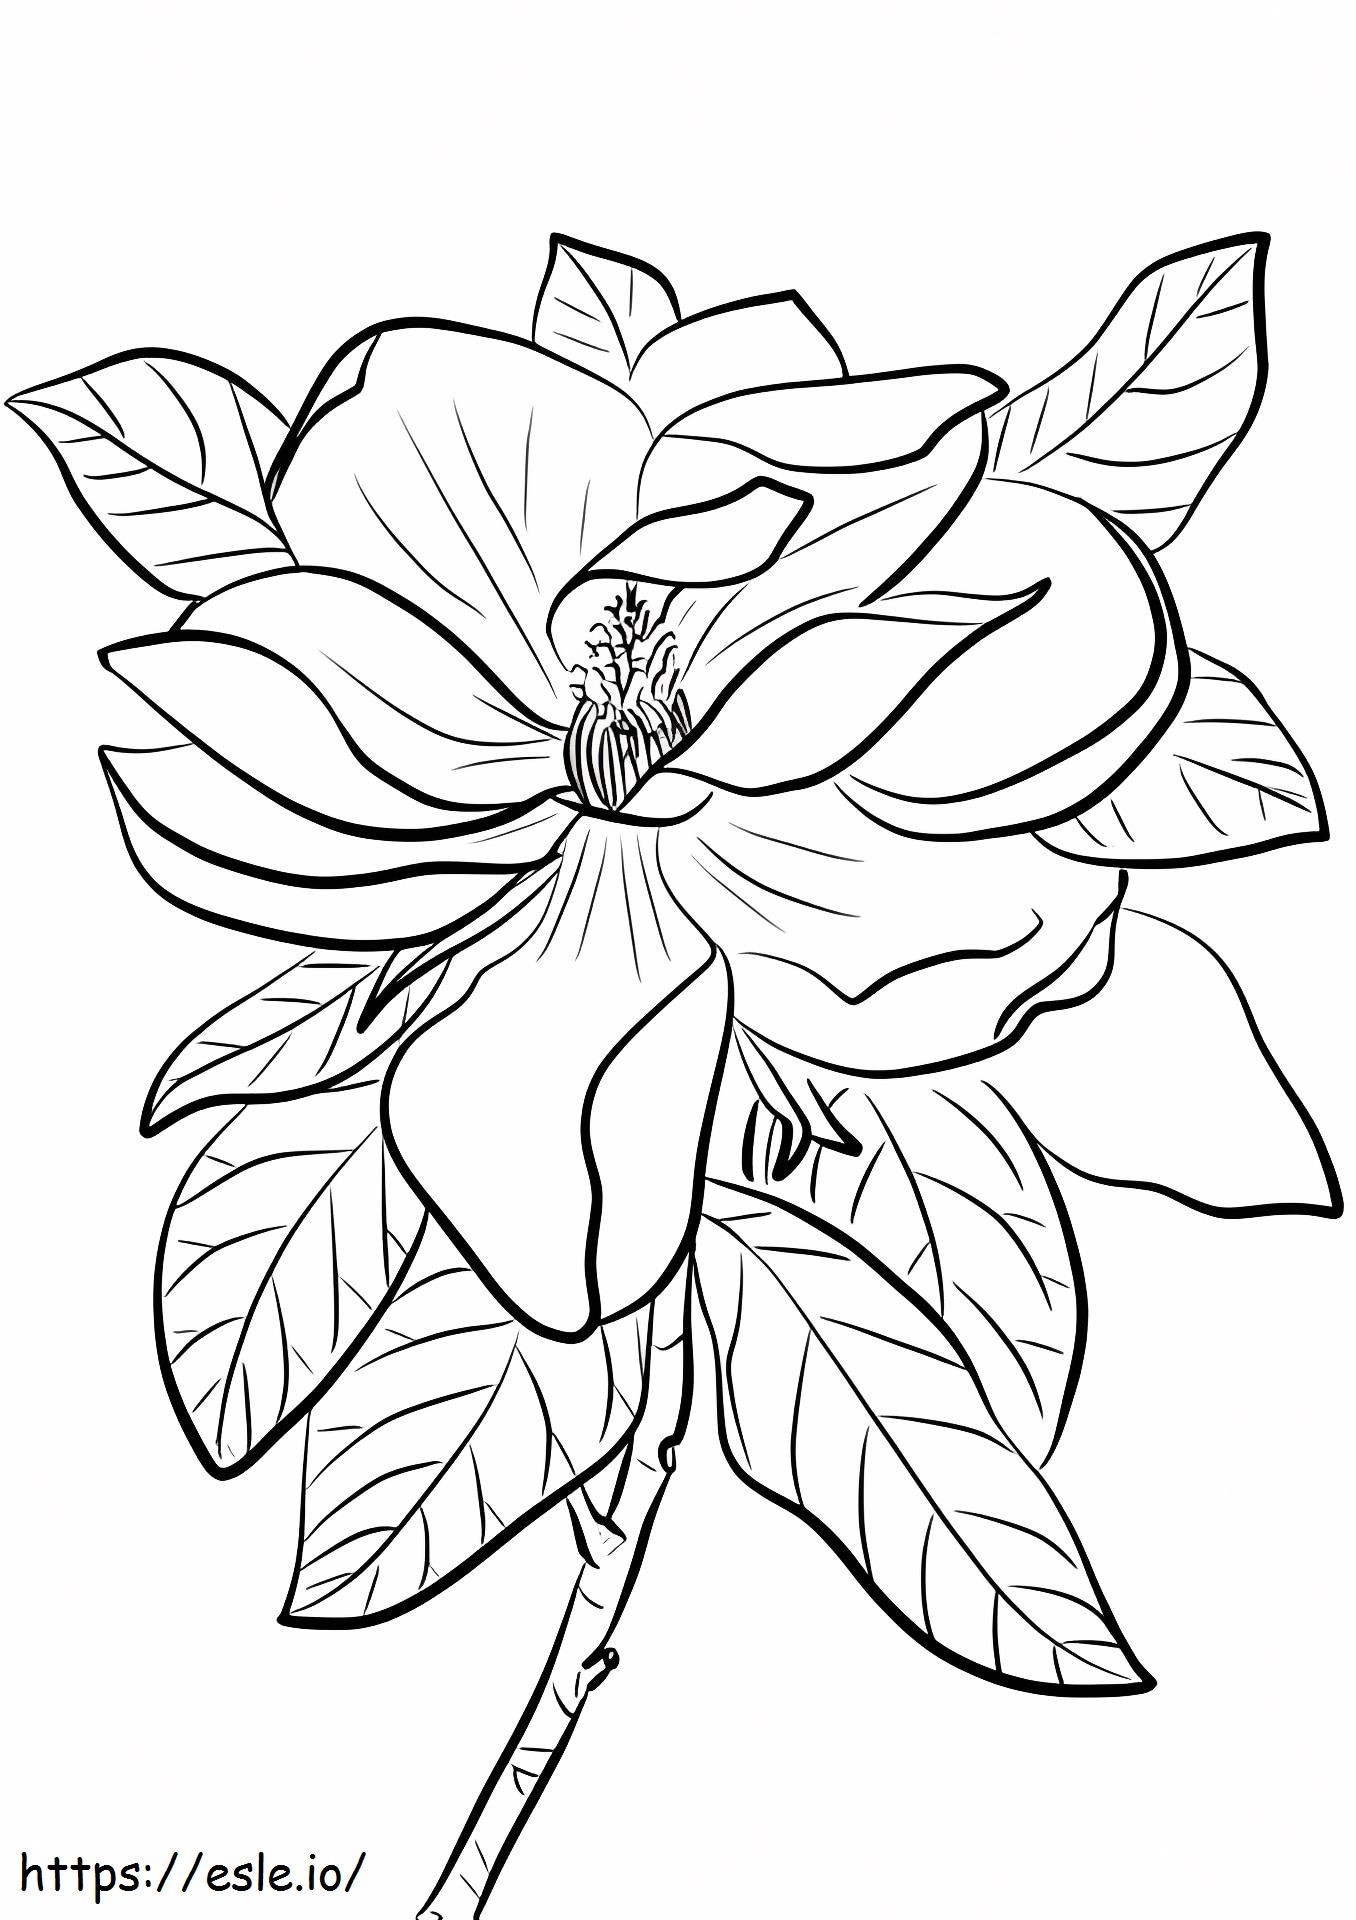 1527069114_Magnolia grandiflora para colorear